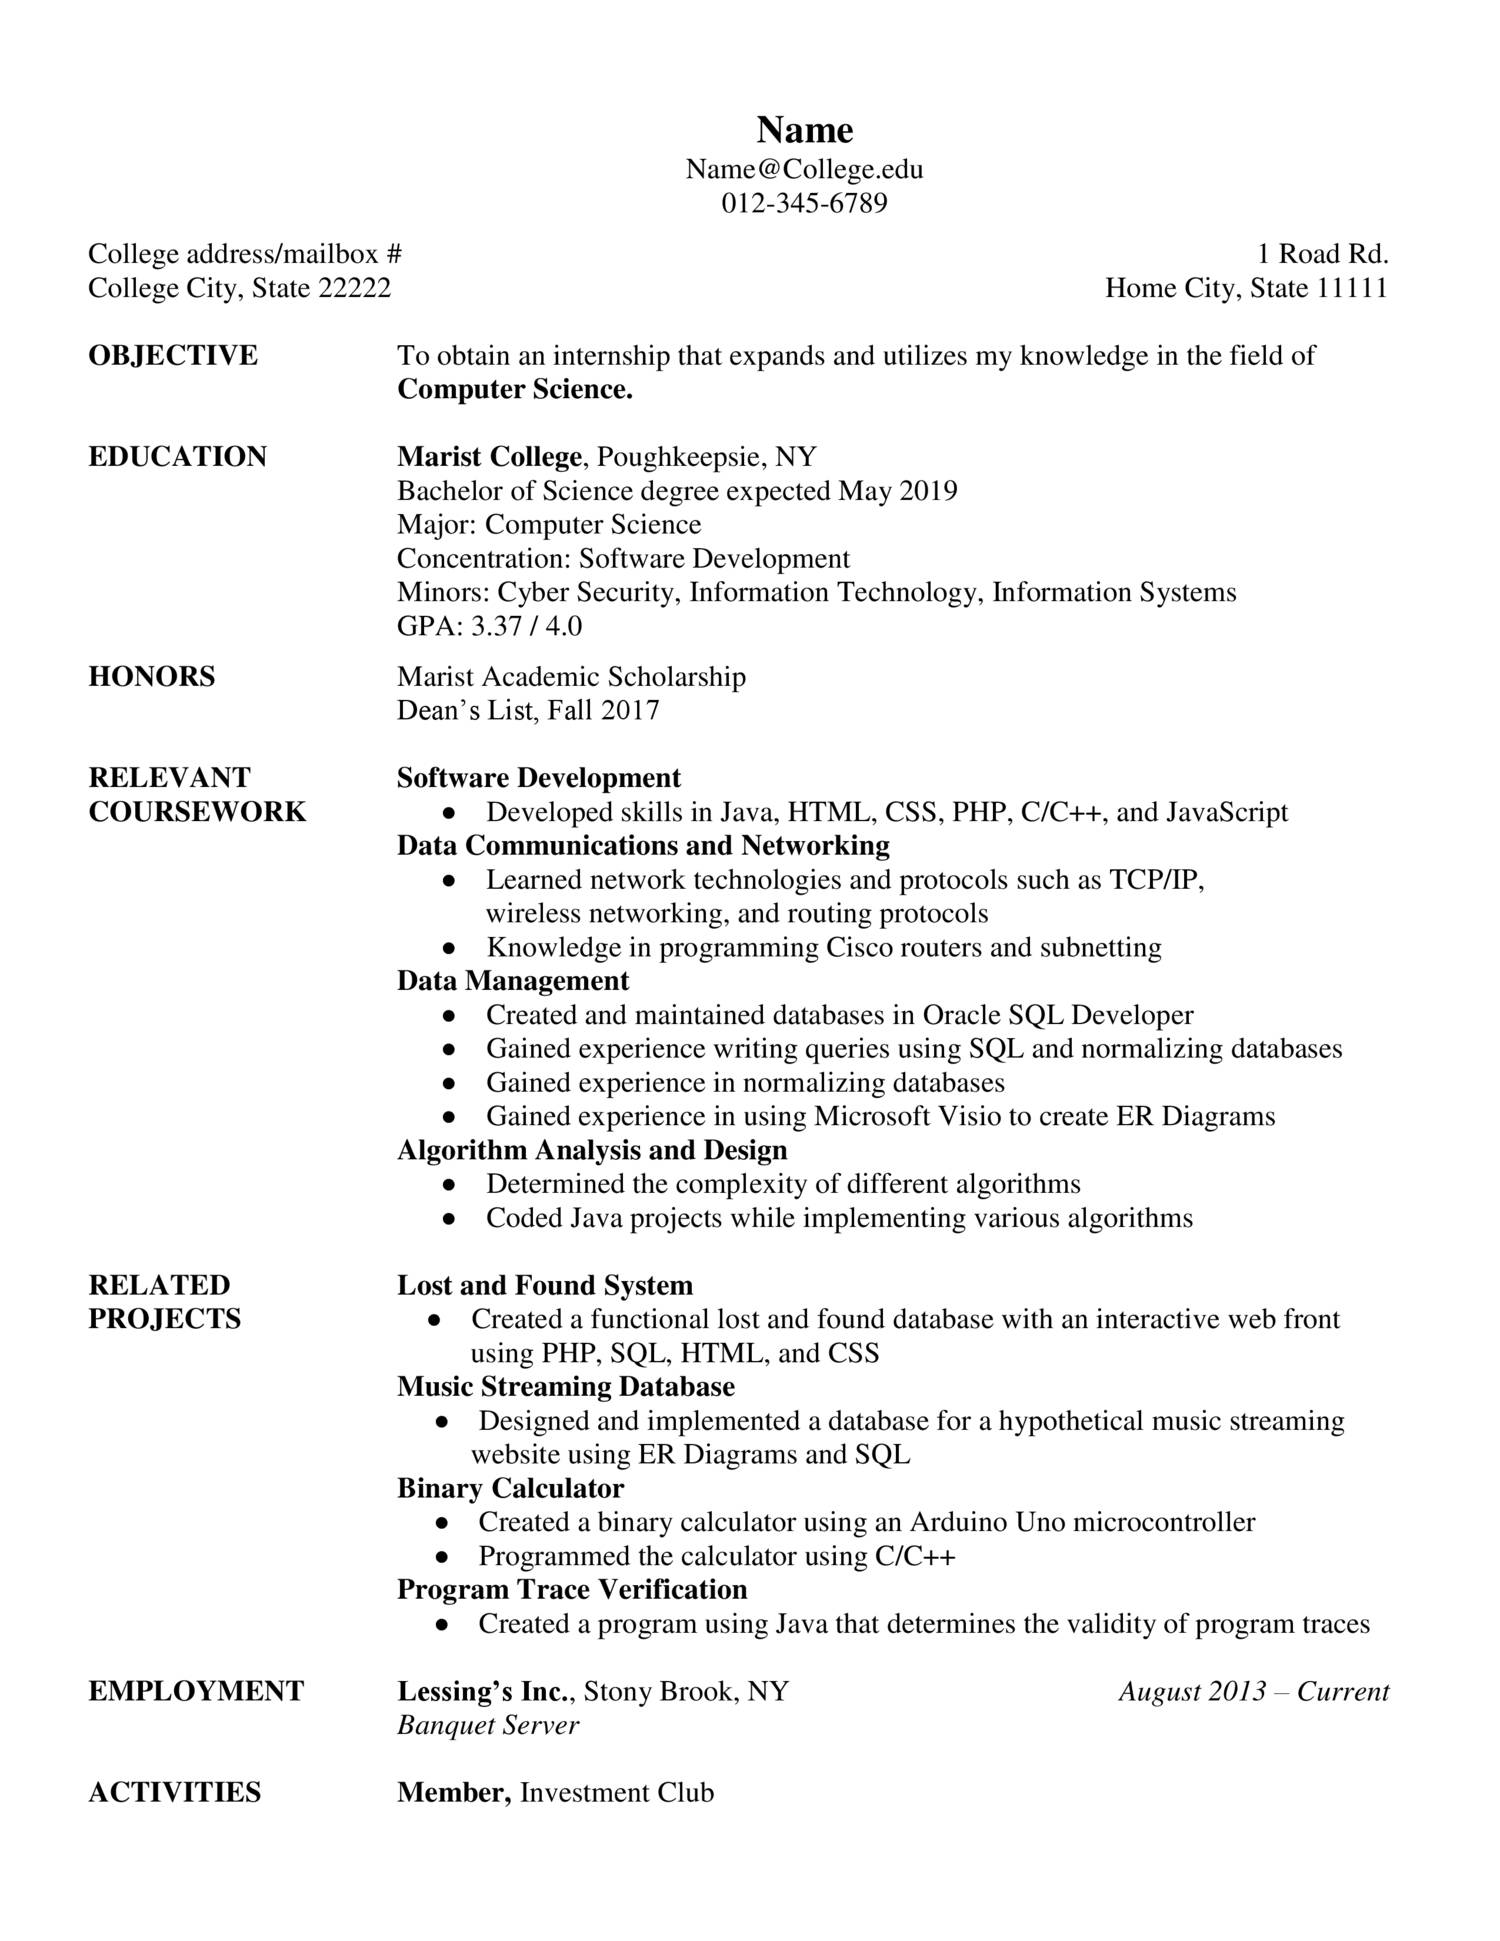 Resume.docx | DocDroid